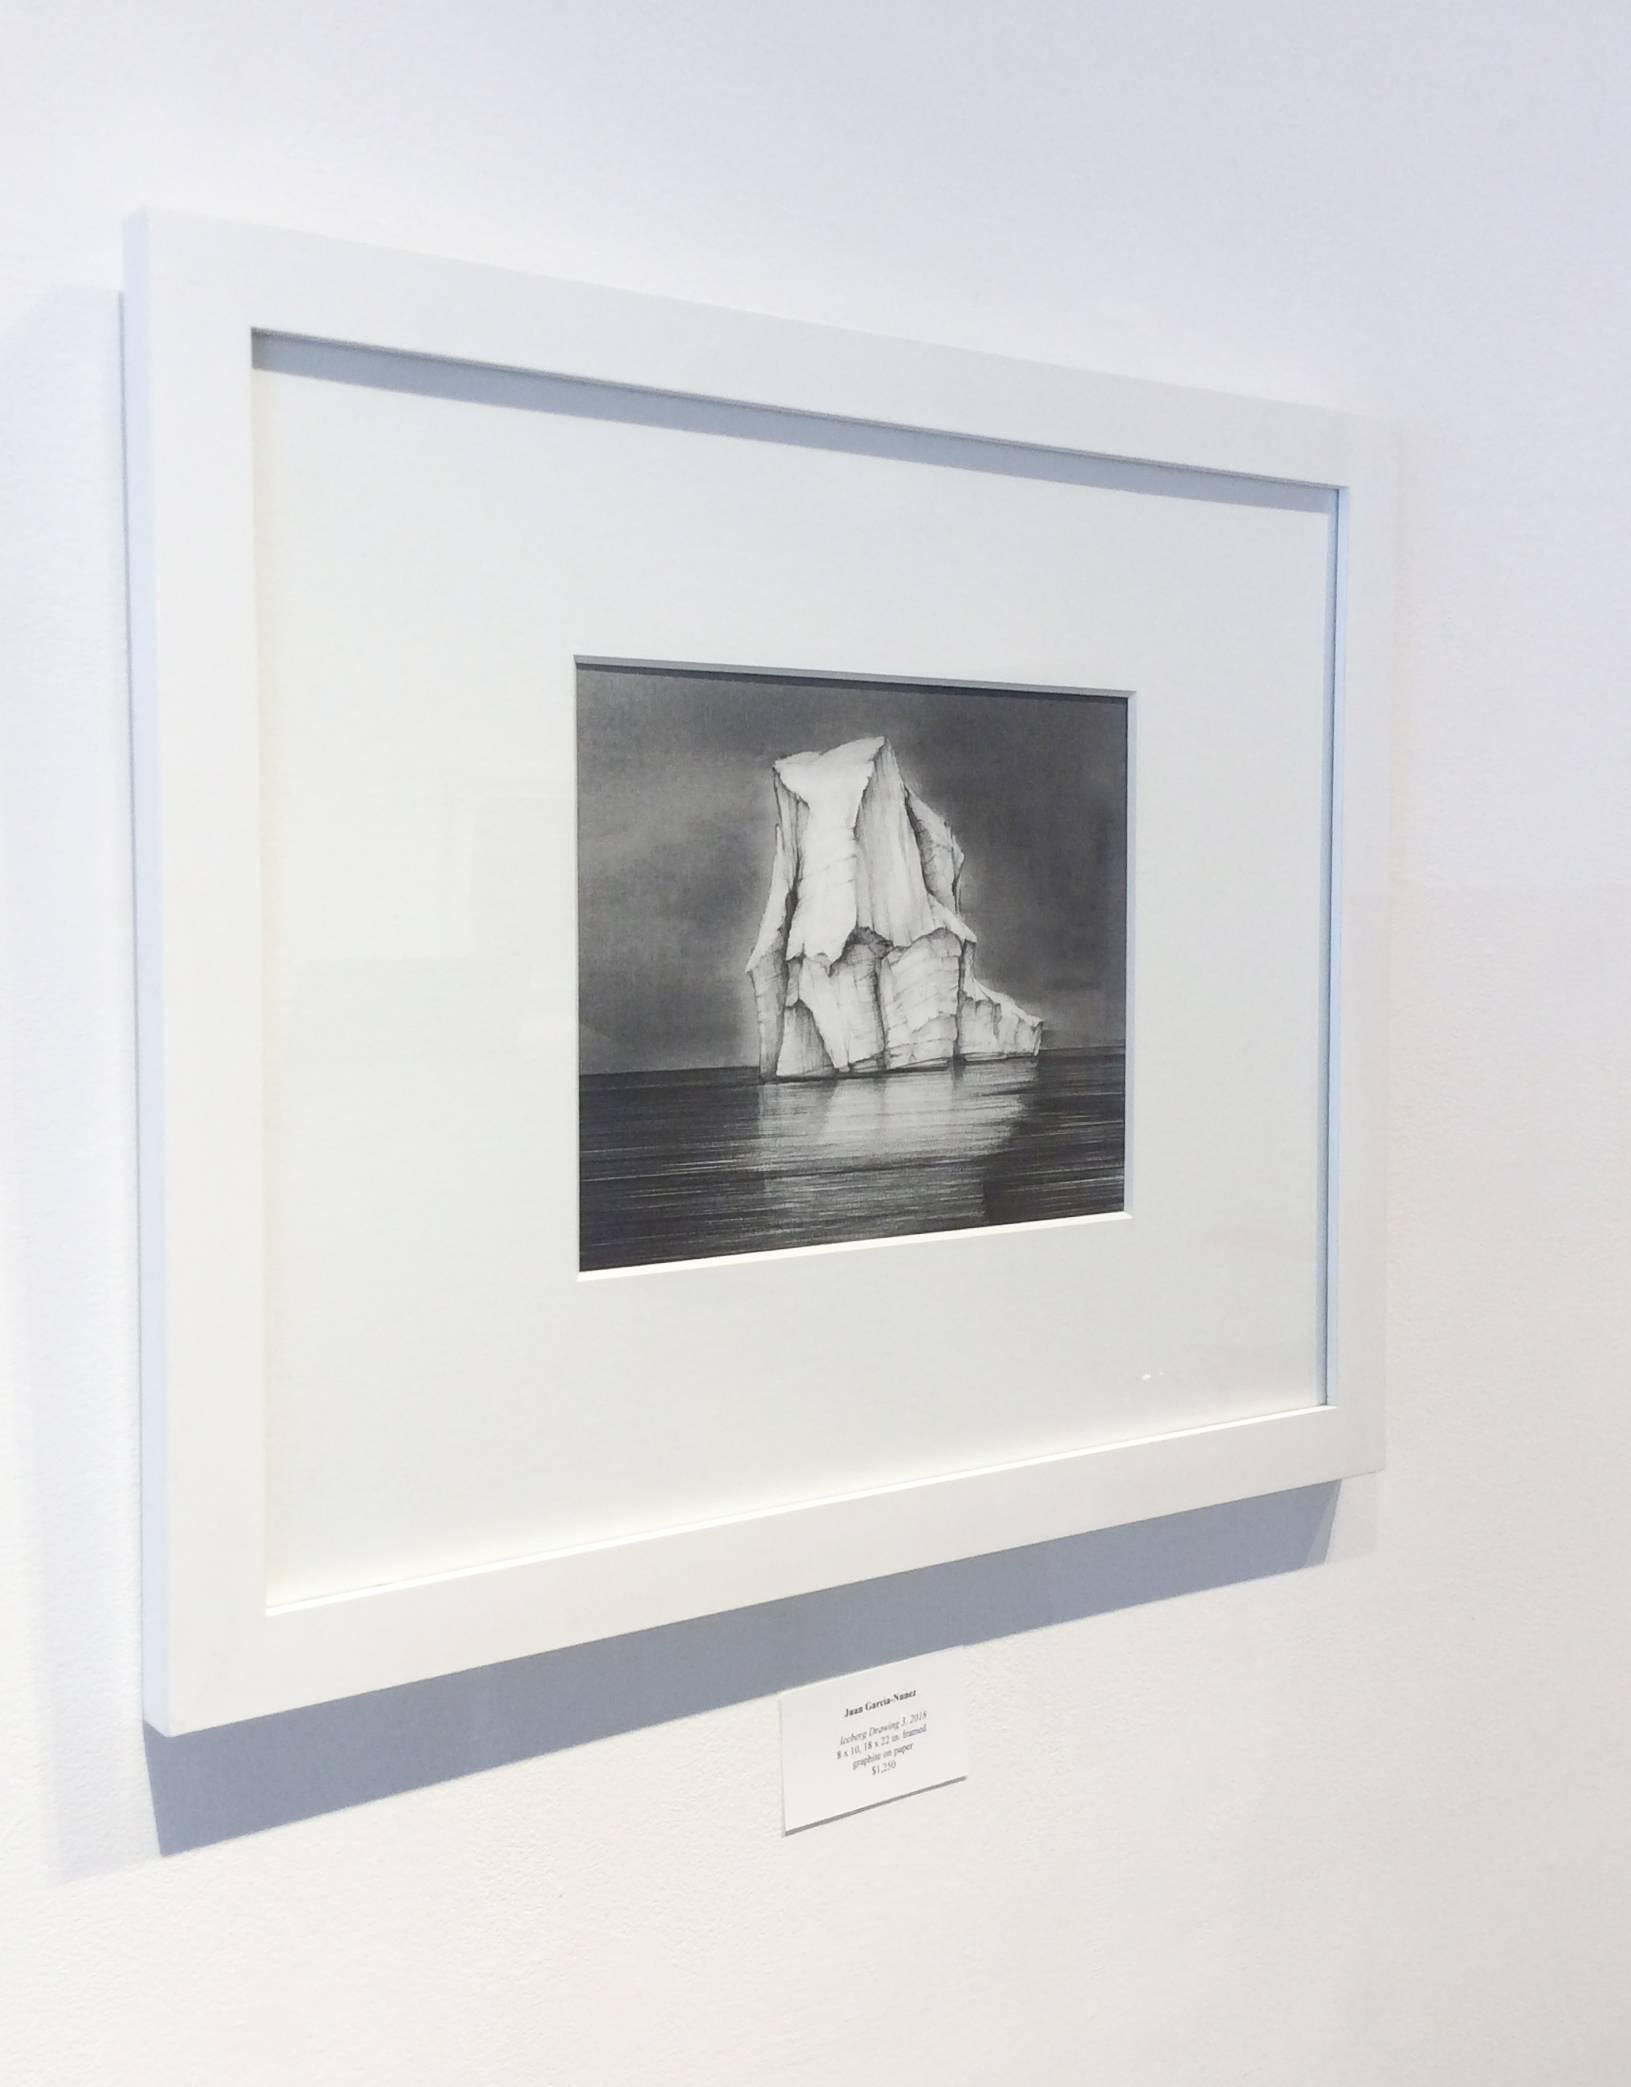 Dessin de Iceberg 3 : Dessin de paysage en noir et blanc représentant un iceberg dans l'eau, encadré - Contemporain Art par Juan Garcia-Nunez